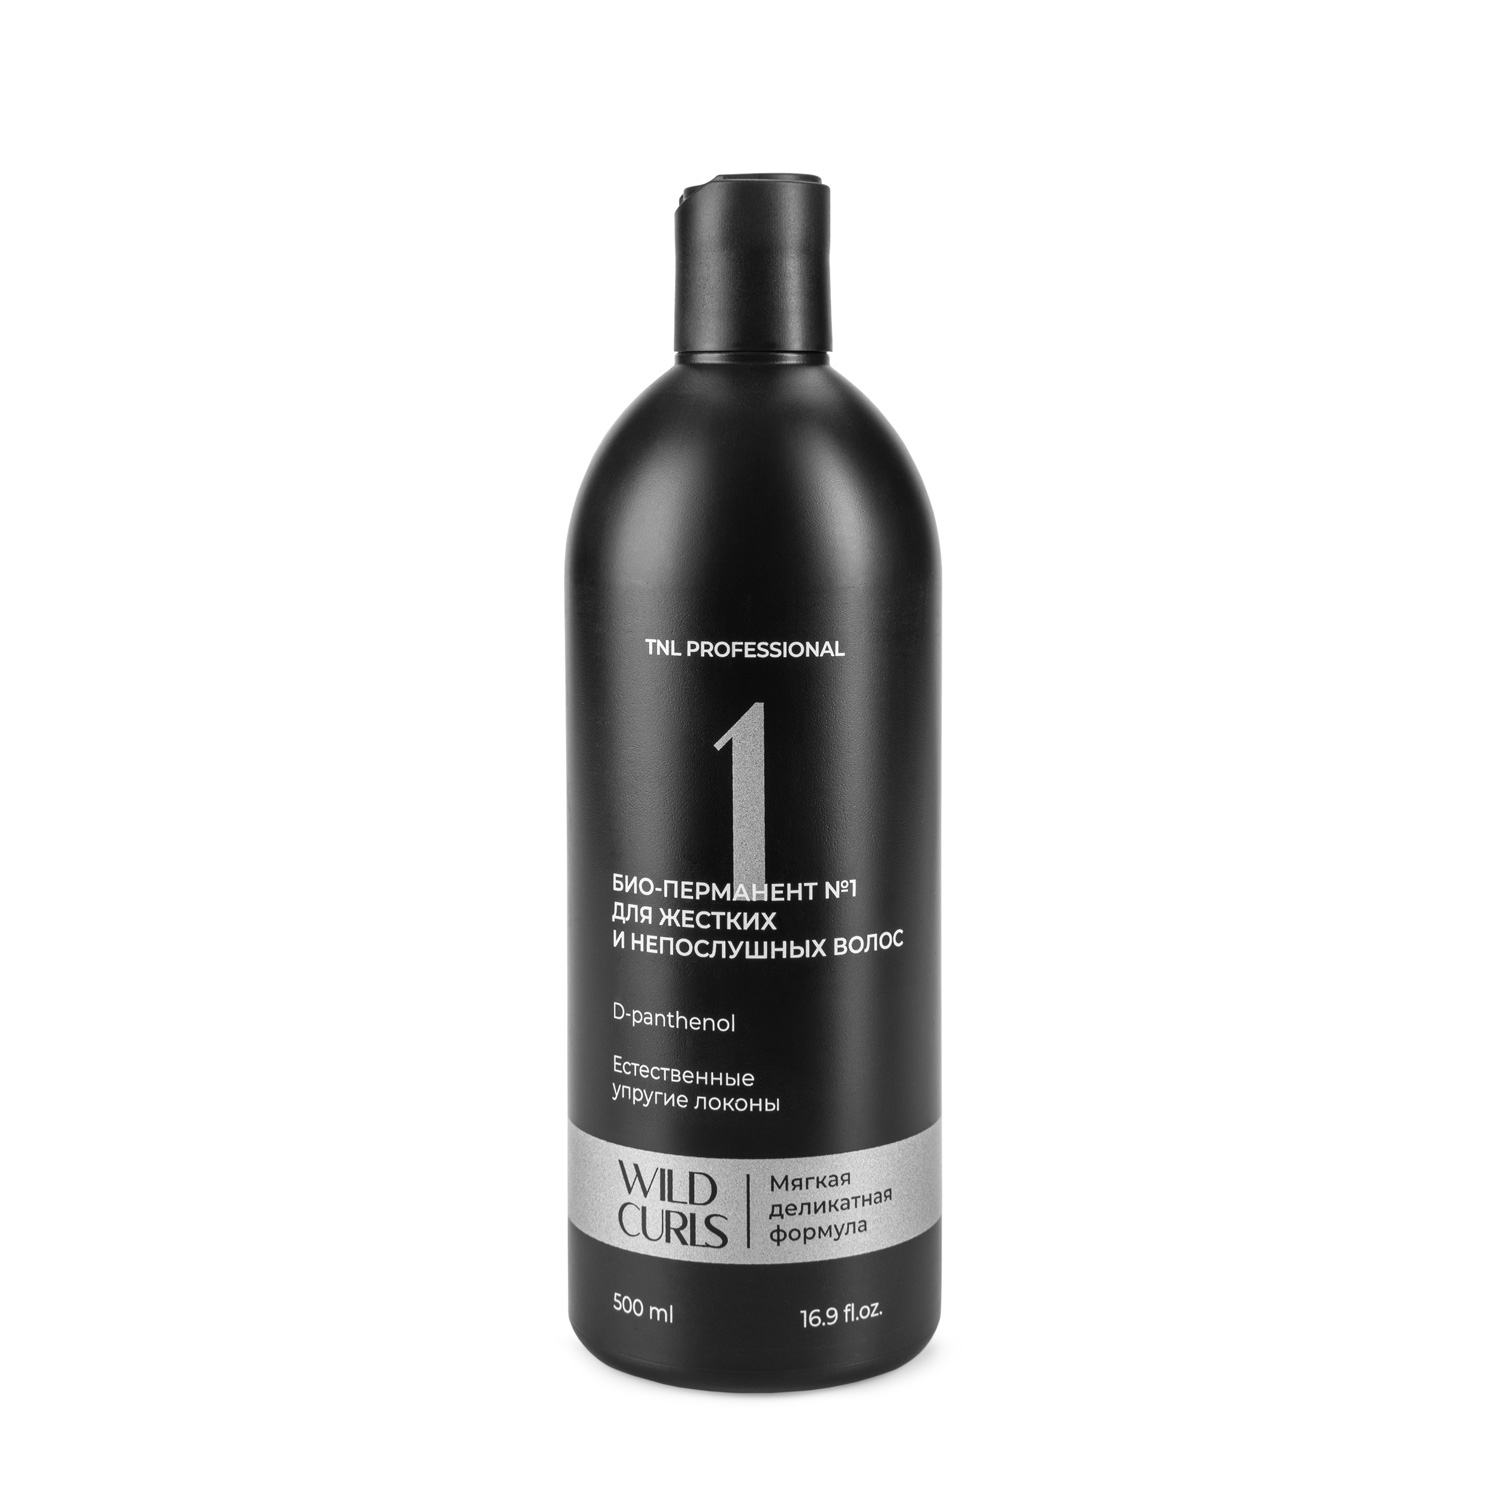 Средства для химической завивки волос:  TNL PROFESSIONAL -  Био-перманент WILD CURLS №1 для жестких и непослушных волос (500 мл)